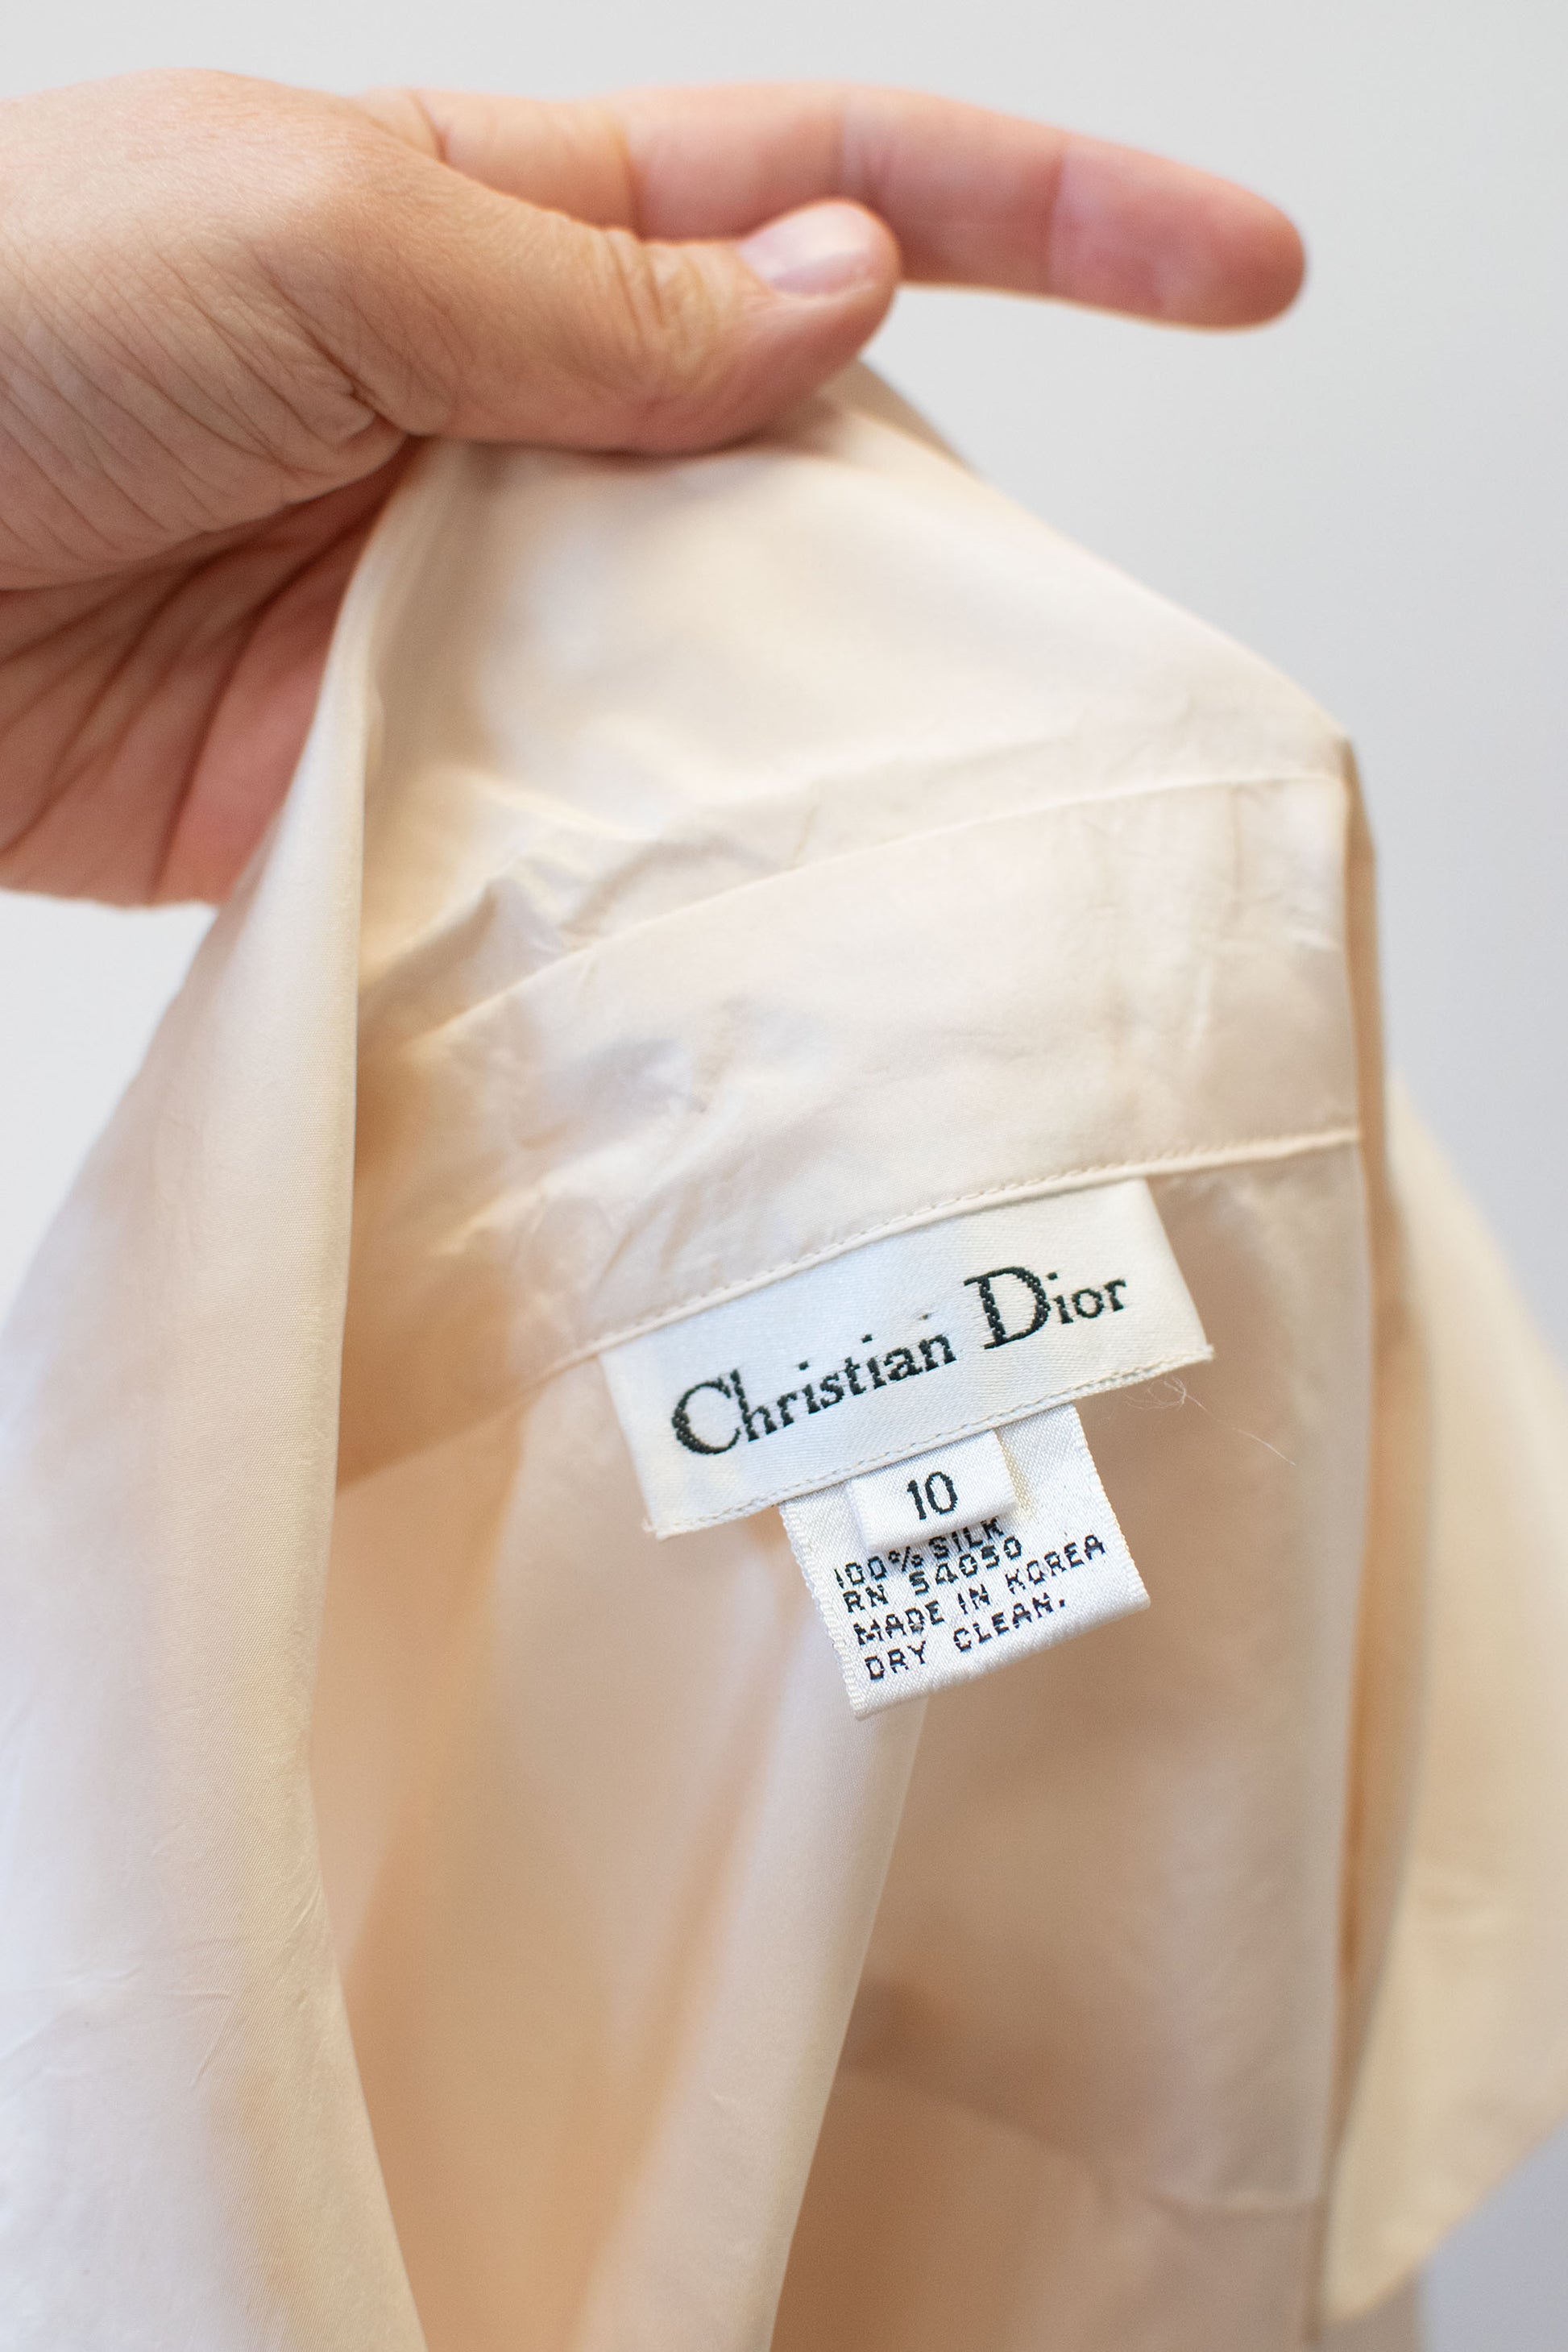 Christian Dior Silk Blouse | A Virtual Affair